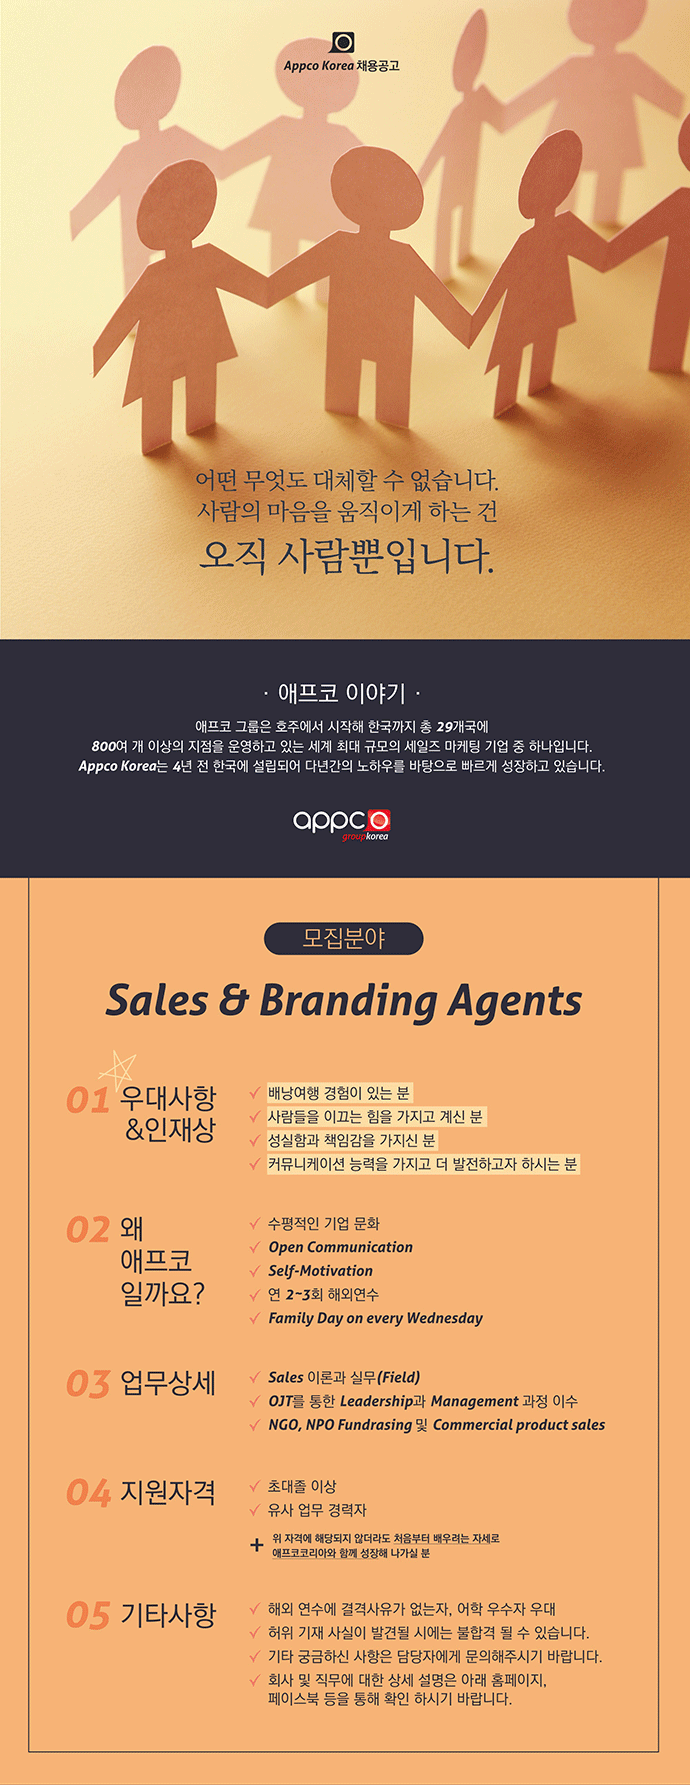 [외국계/왕십리지점] APPCO KOREA Sales & Branding Agents 모집; Branding Agents 모집